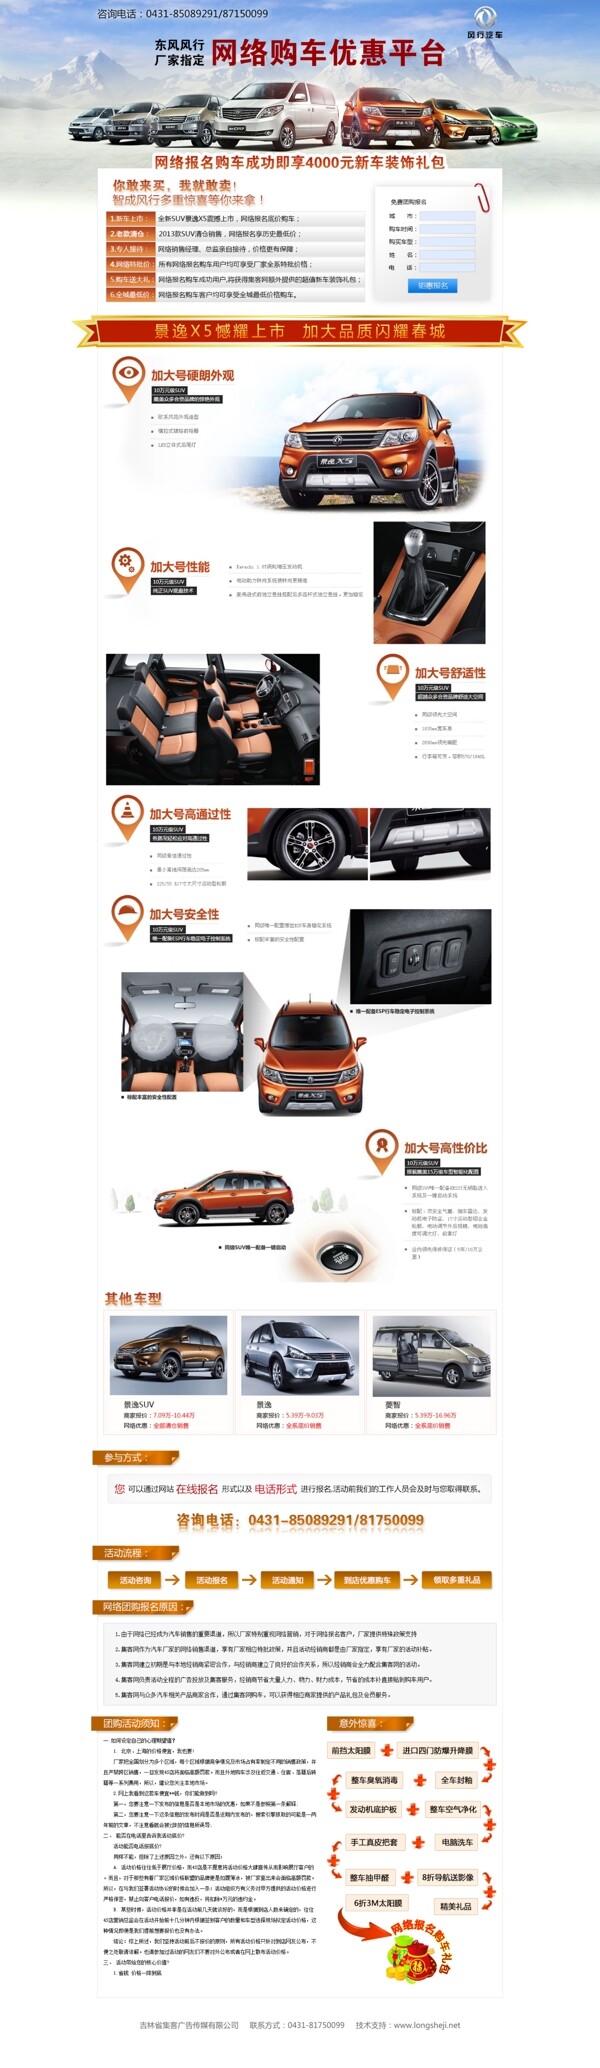 汽车销售专题页模版图片